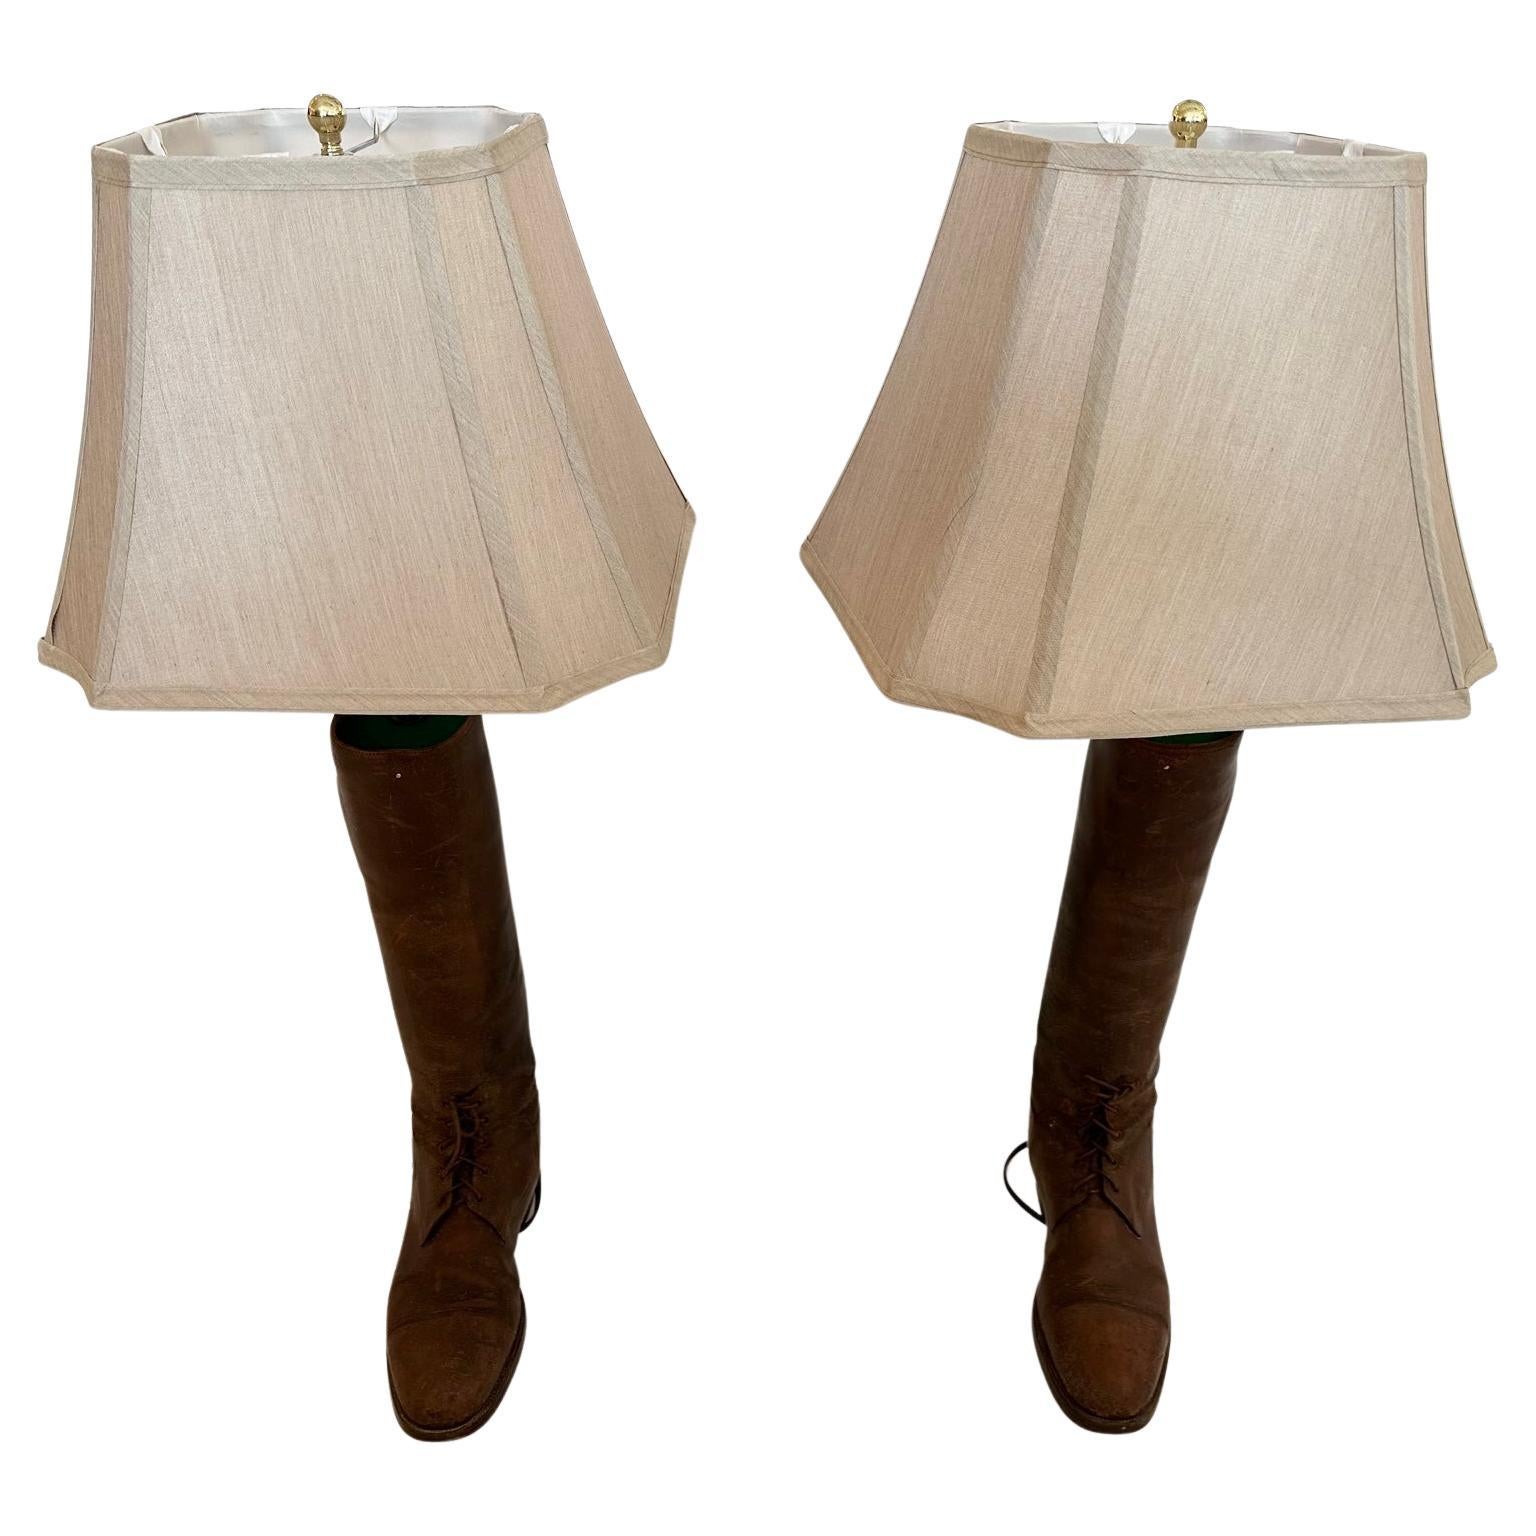 Paire de lampes de table insolites et riches en caractère, créées sur mesure à partir de bottes d'équitation anglaises anciennes et croustillantes.